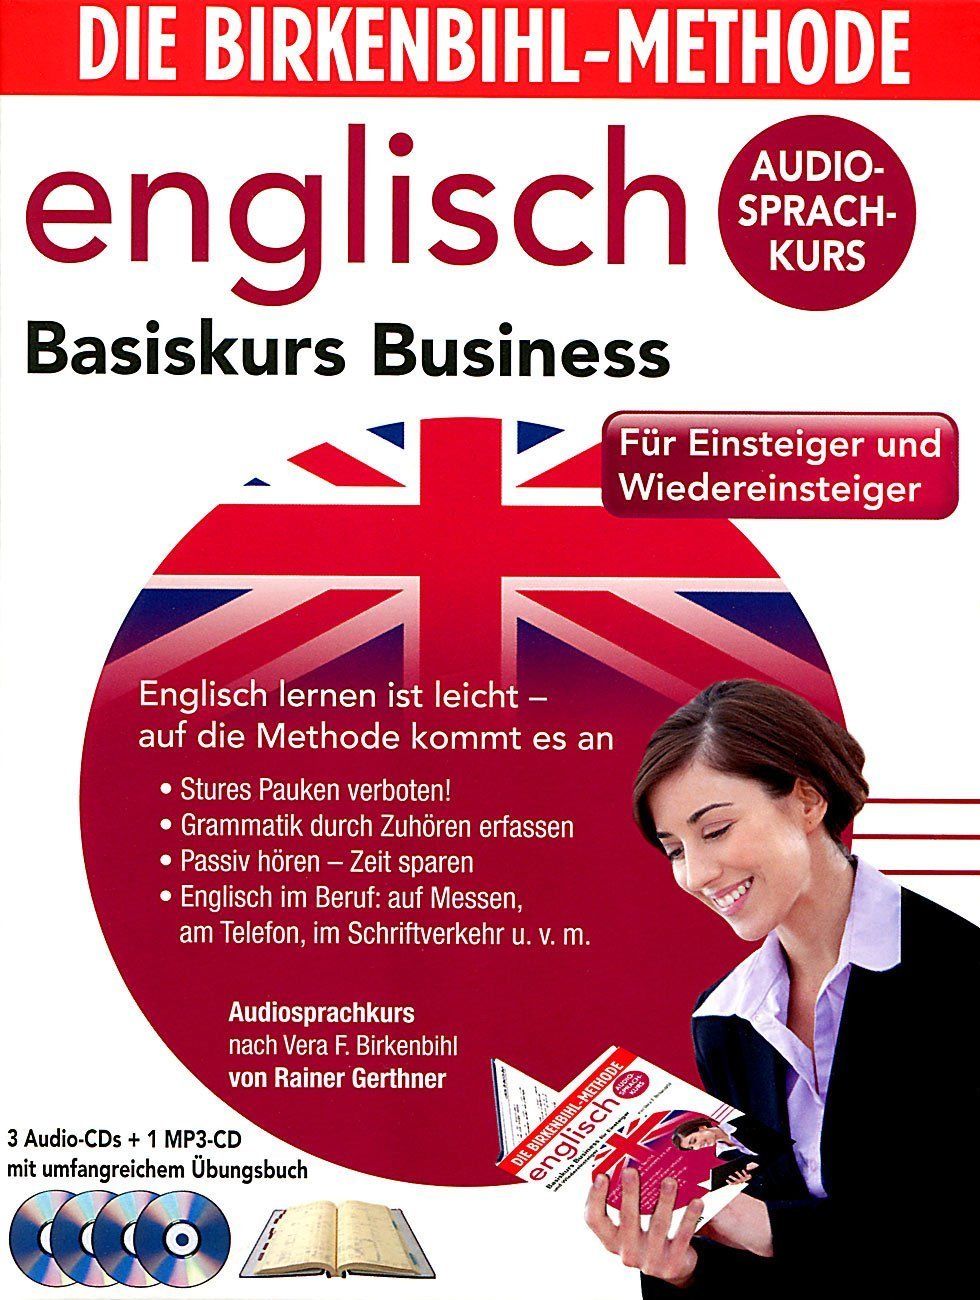 Audio-Sprachkurs Birkenbihl Basiskurs Business Englisch Kurs 4 CD's + Übungsbuch